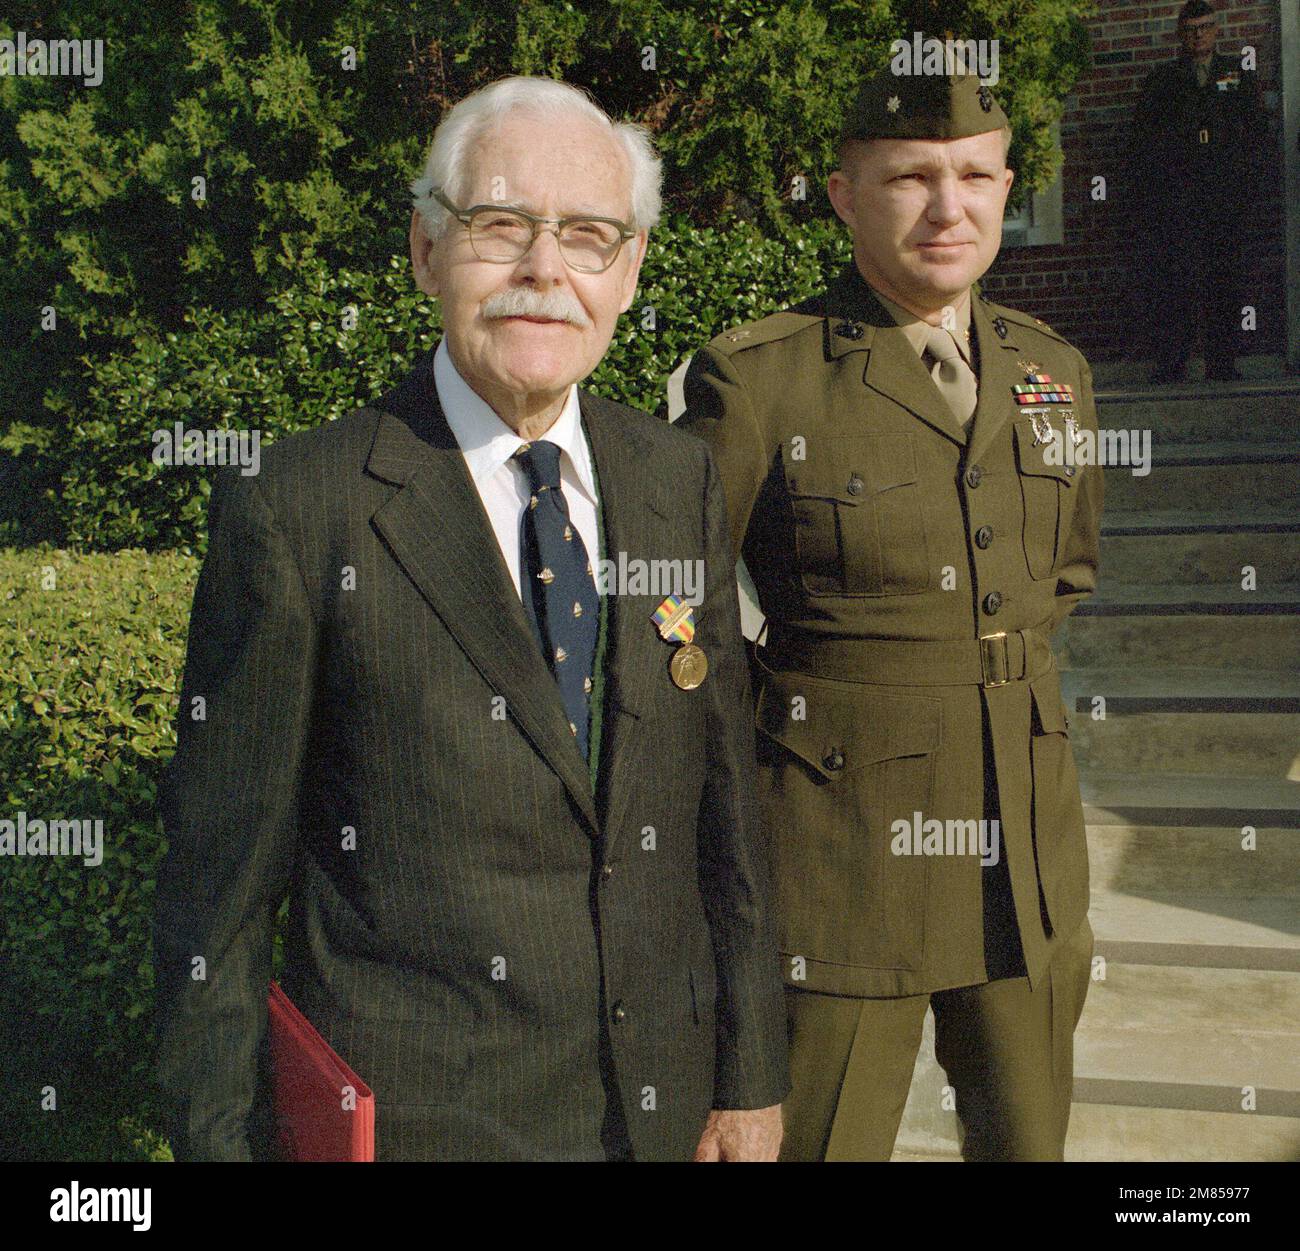 Albert Reidinger, ein Veteran des Ersten Weltkriegs, hat soeben die Siegesmedaille bei einer Zeremonie an seinem 90. Geburtstag erhalten. Basis: Marinestützpunkt, Quantico Bundesstaat: Virginia (VA) Land: Vereinigte Staaten von Amerika (USA) Stockfoto